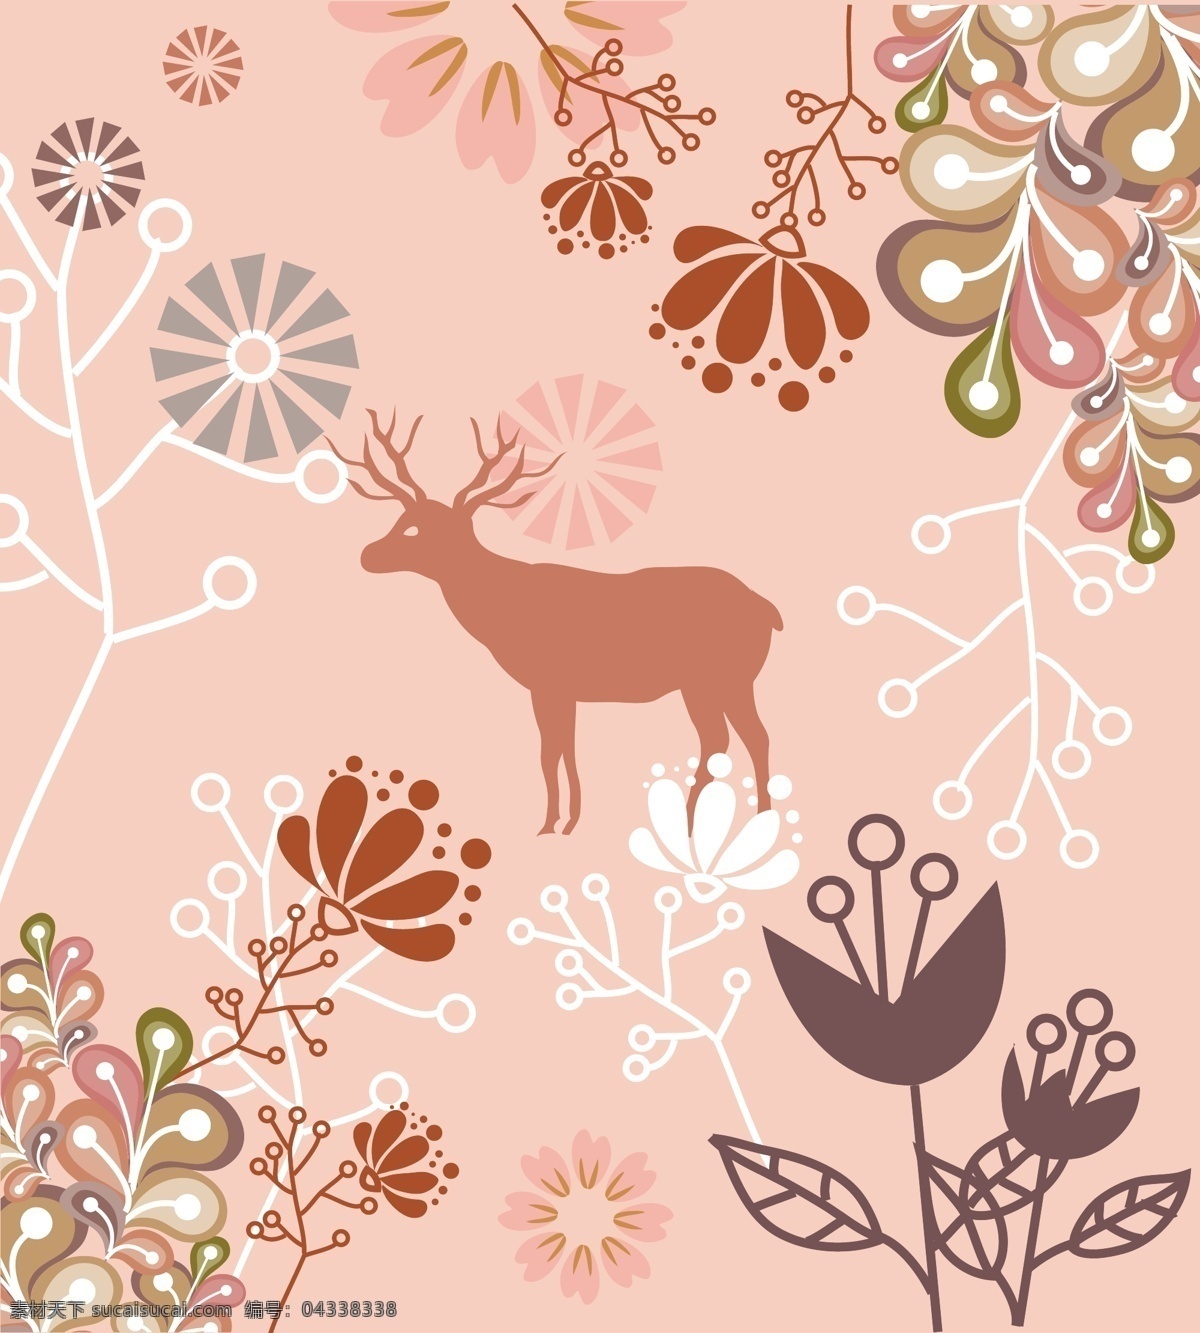 粉红色 小羊 植物 动物 清新 底纹 背景 清新底纹 树 叶 矢量树 叶子 矢量叶子